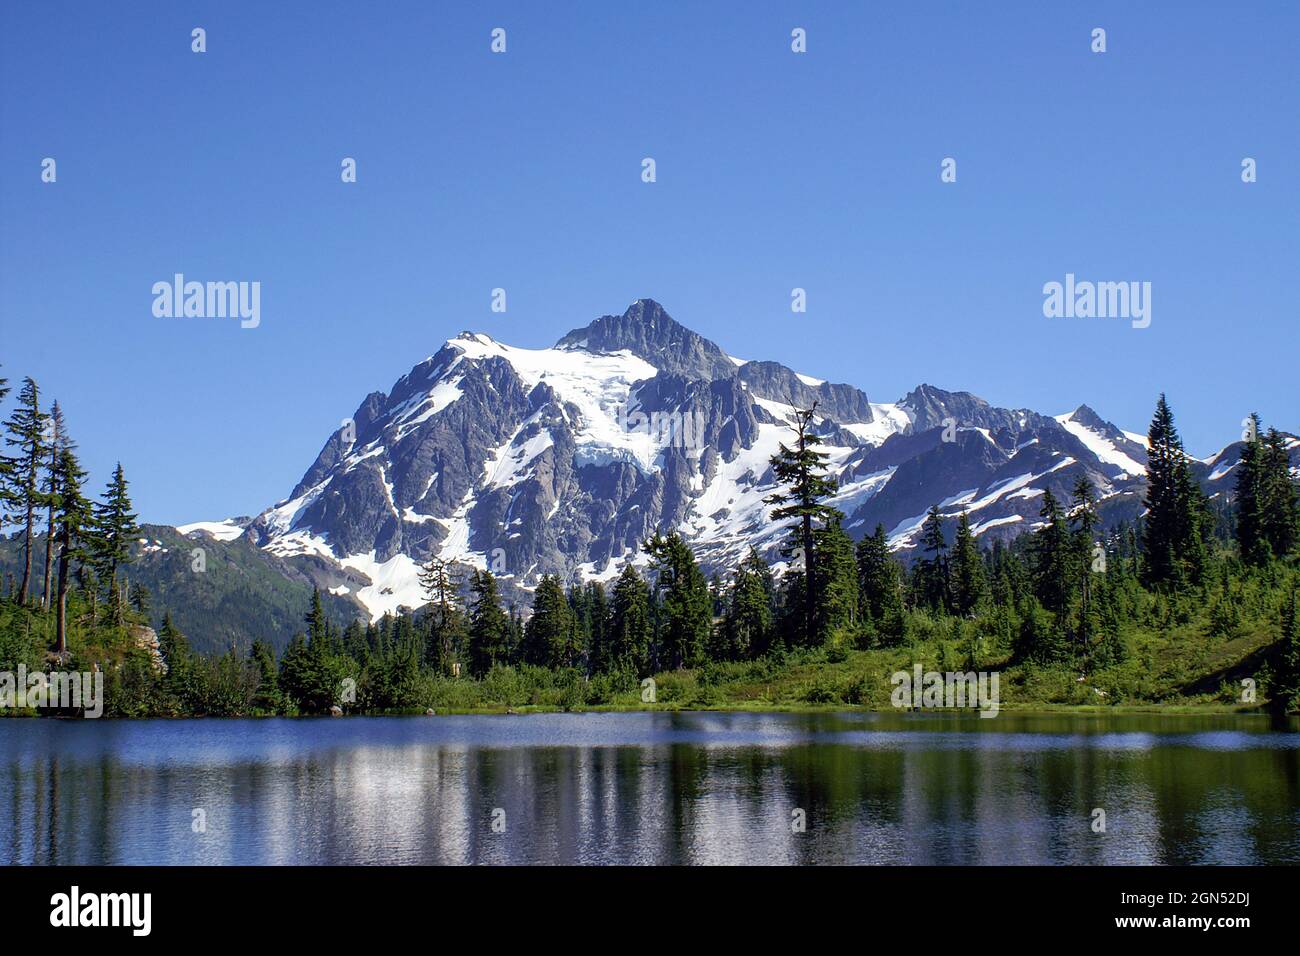 Mount Shuksan mit klarem blauen Himmel und Picture Lake. Bild See mit vergletscherten Mt. Shuksan im Hintergrund an einem wolkenlosen Sommertag Stockfoto